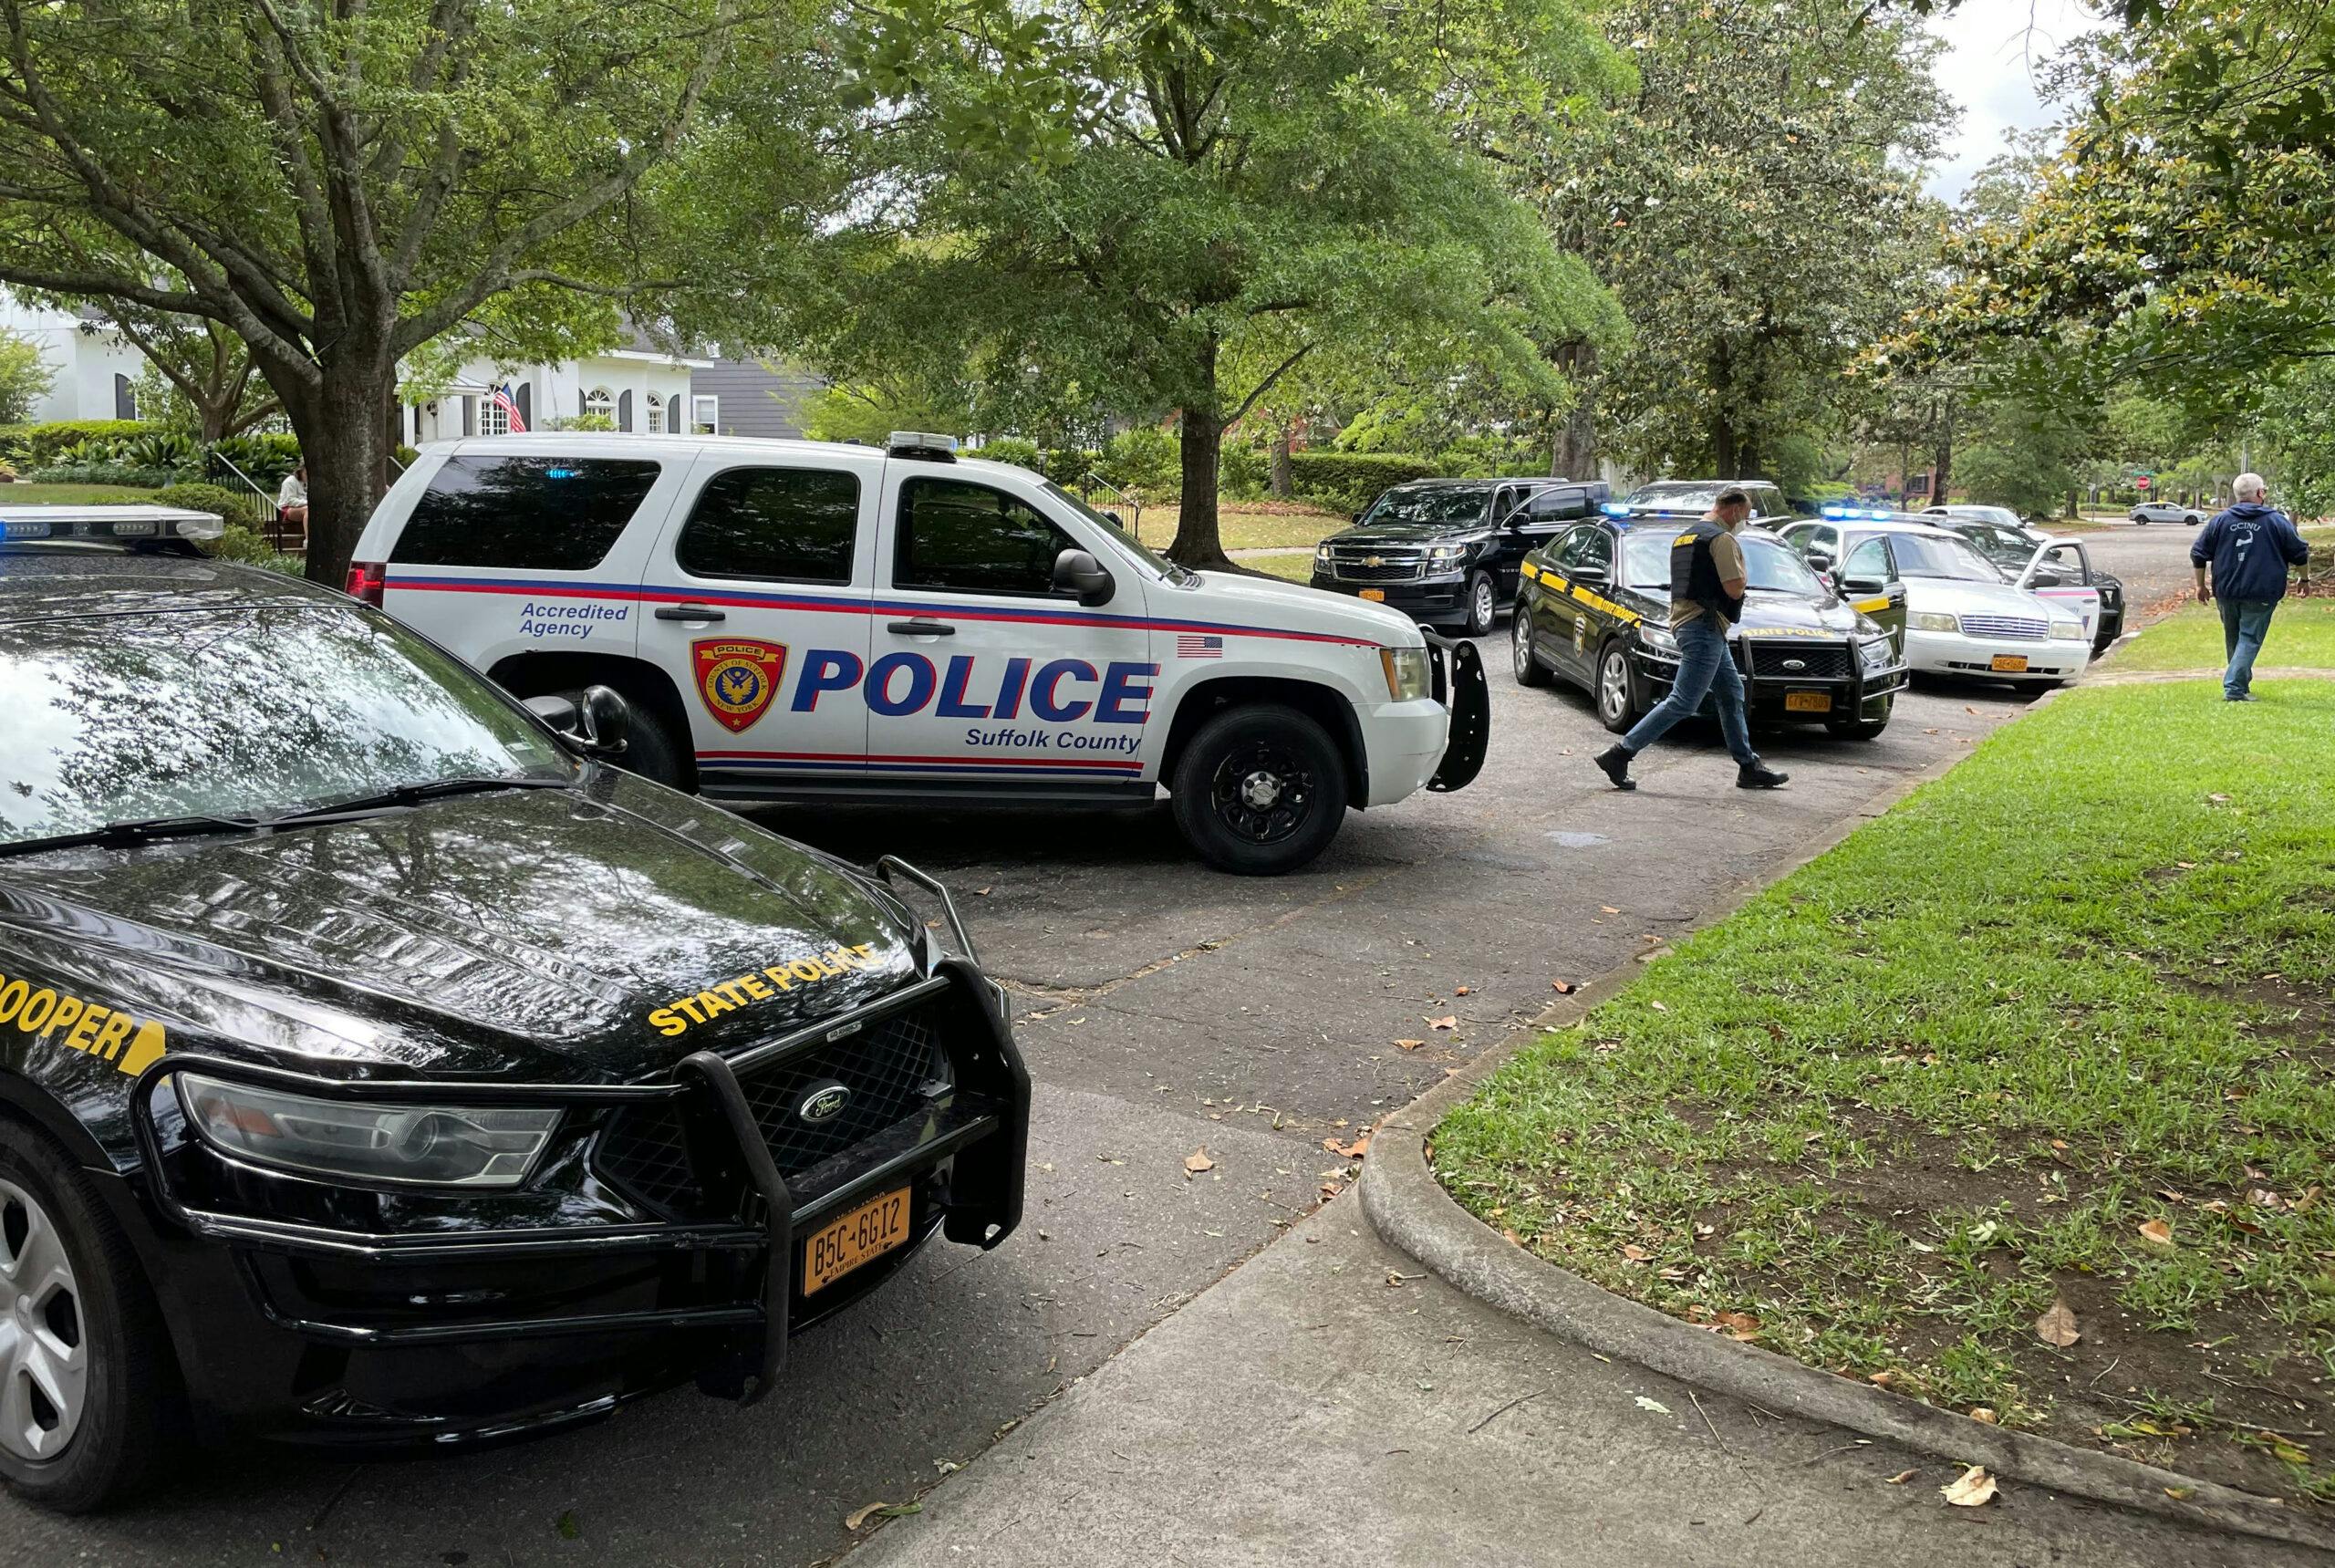 police cars movie props scene